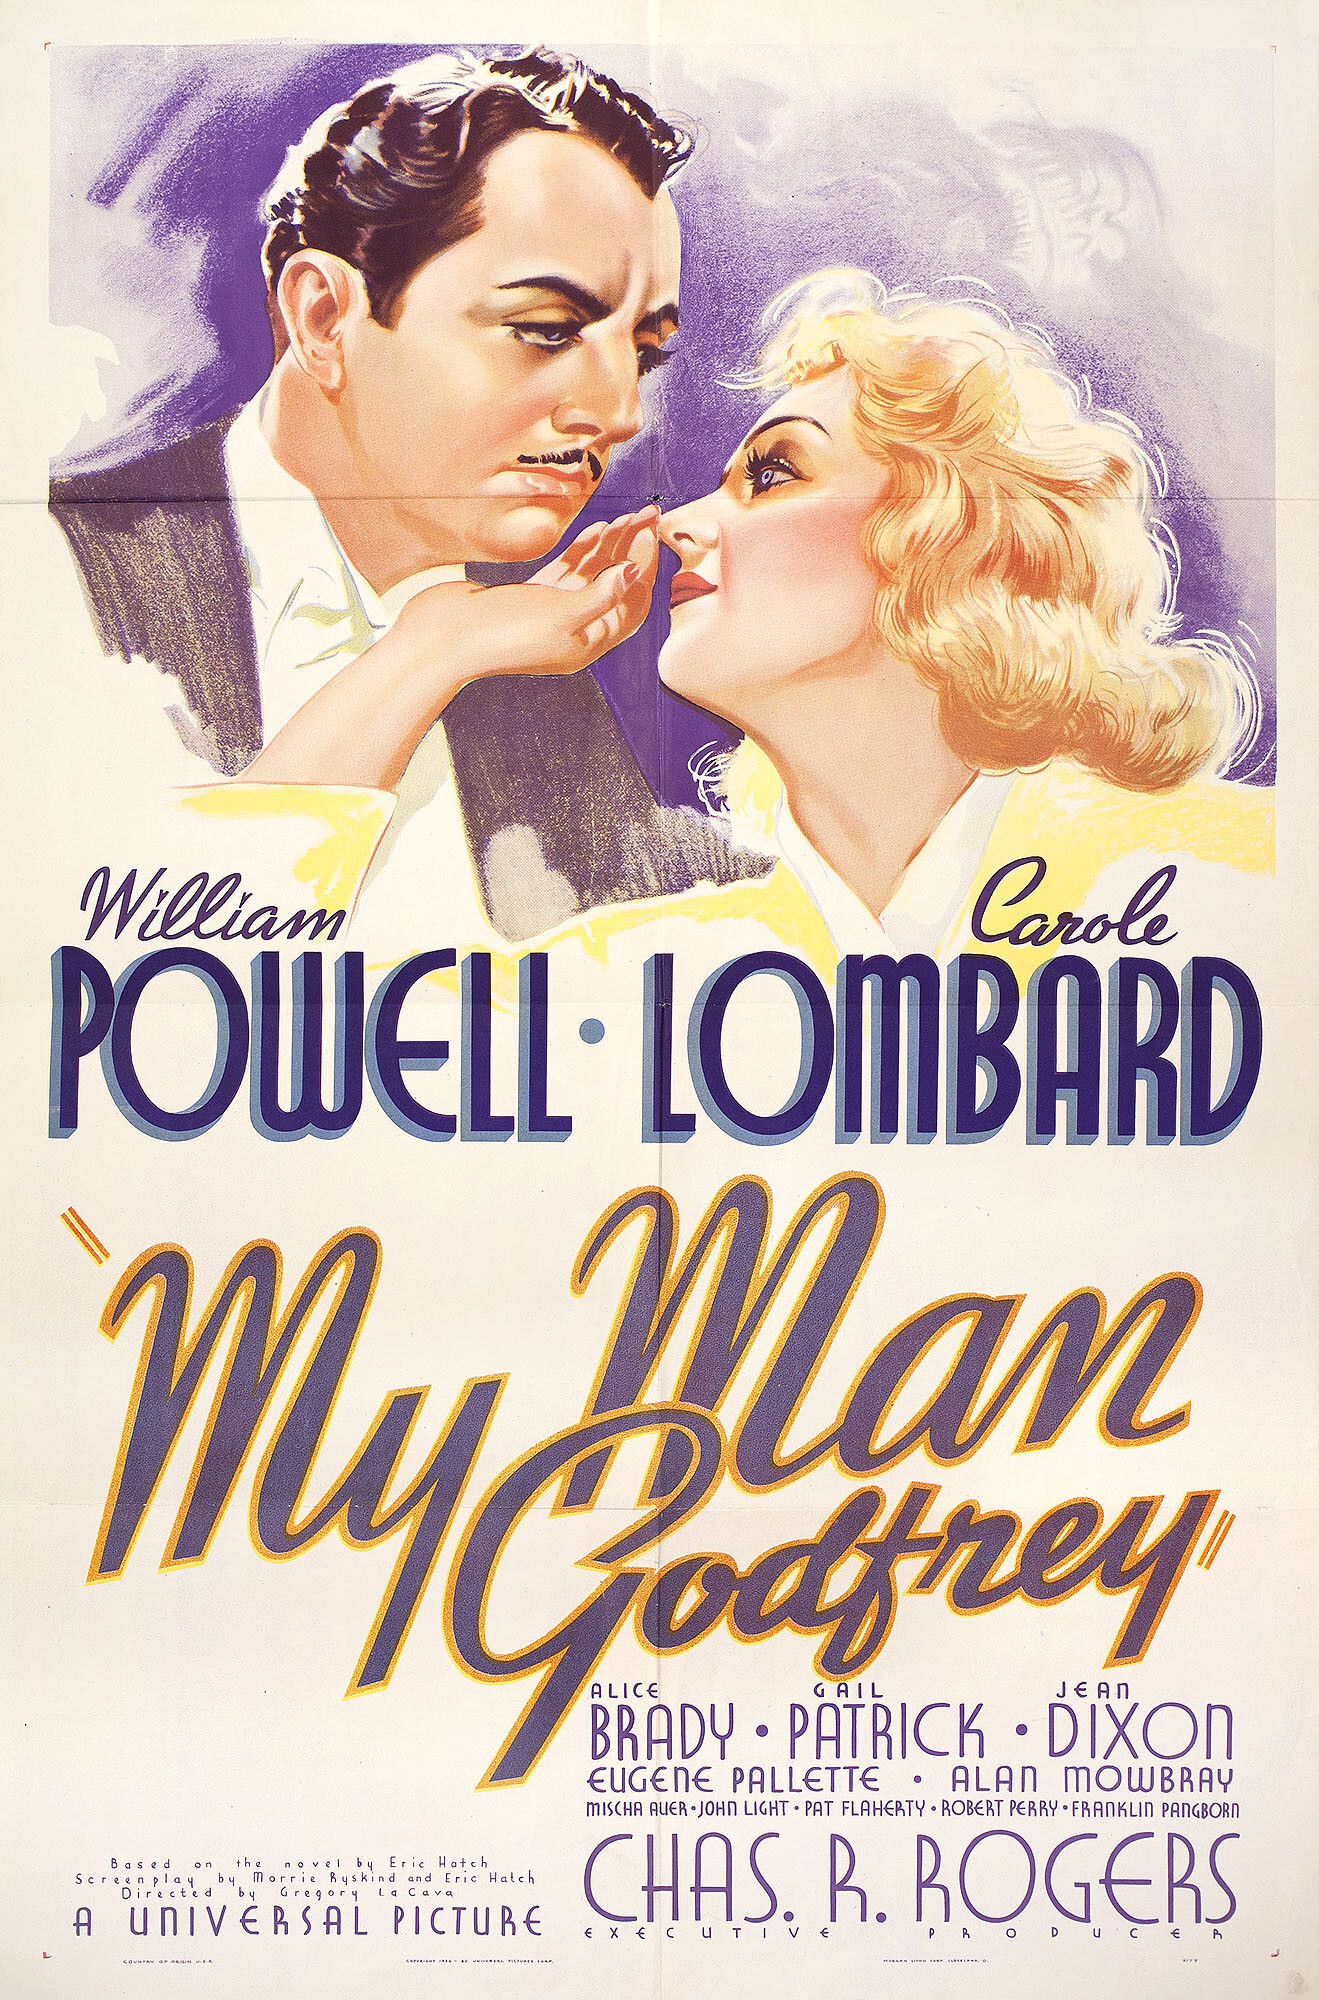 Мой слуга Годфри (My Man Godfrey, 1936), режиссёр Грегори Ла Кава, постер к фильму в стиле ар-деко (США, 1936 год)